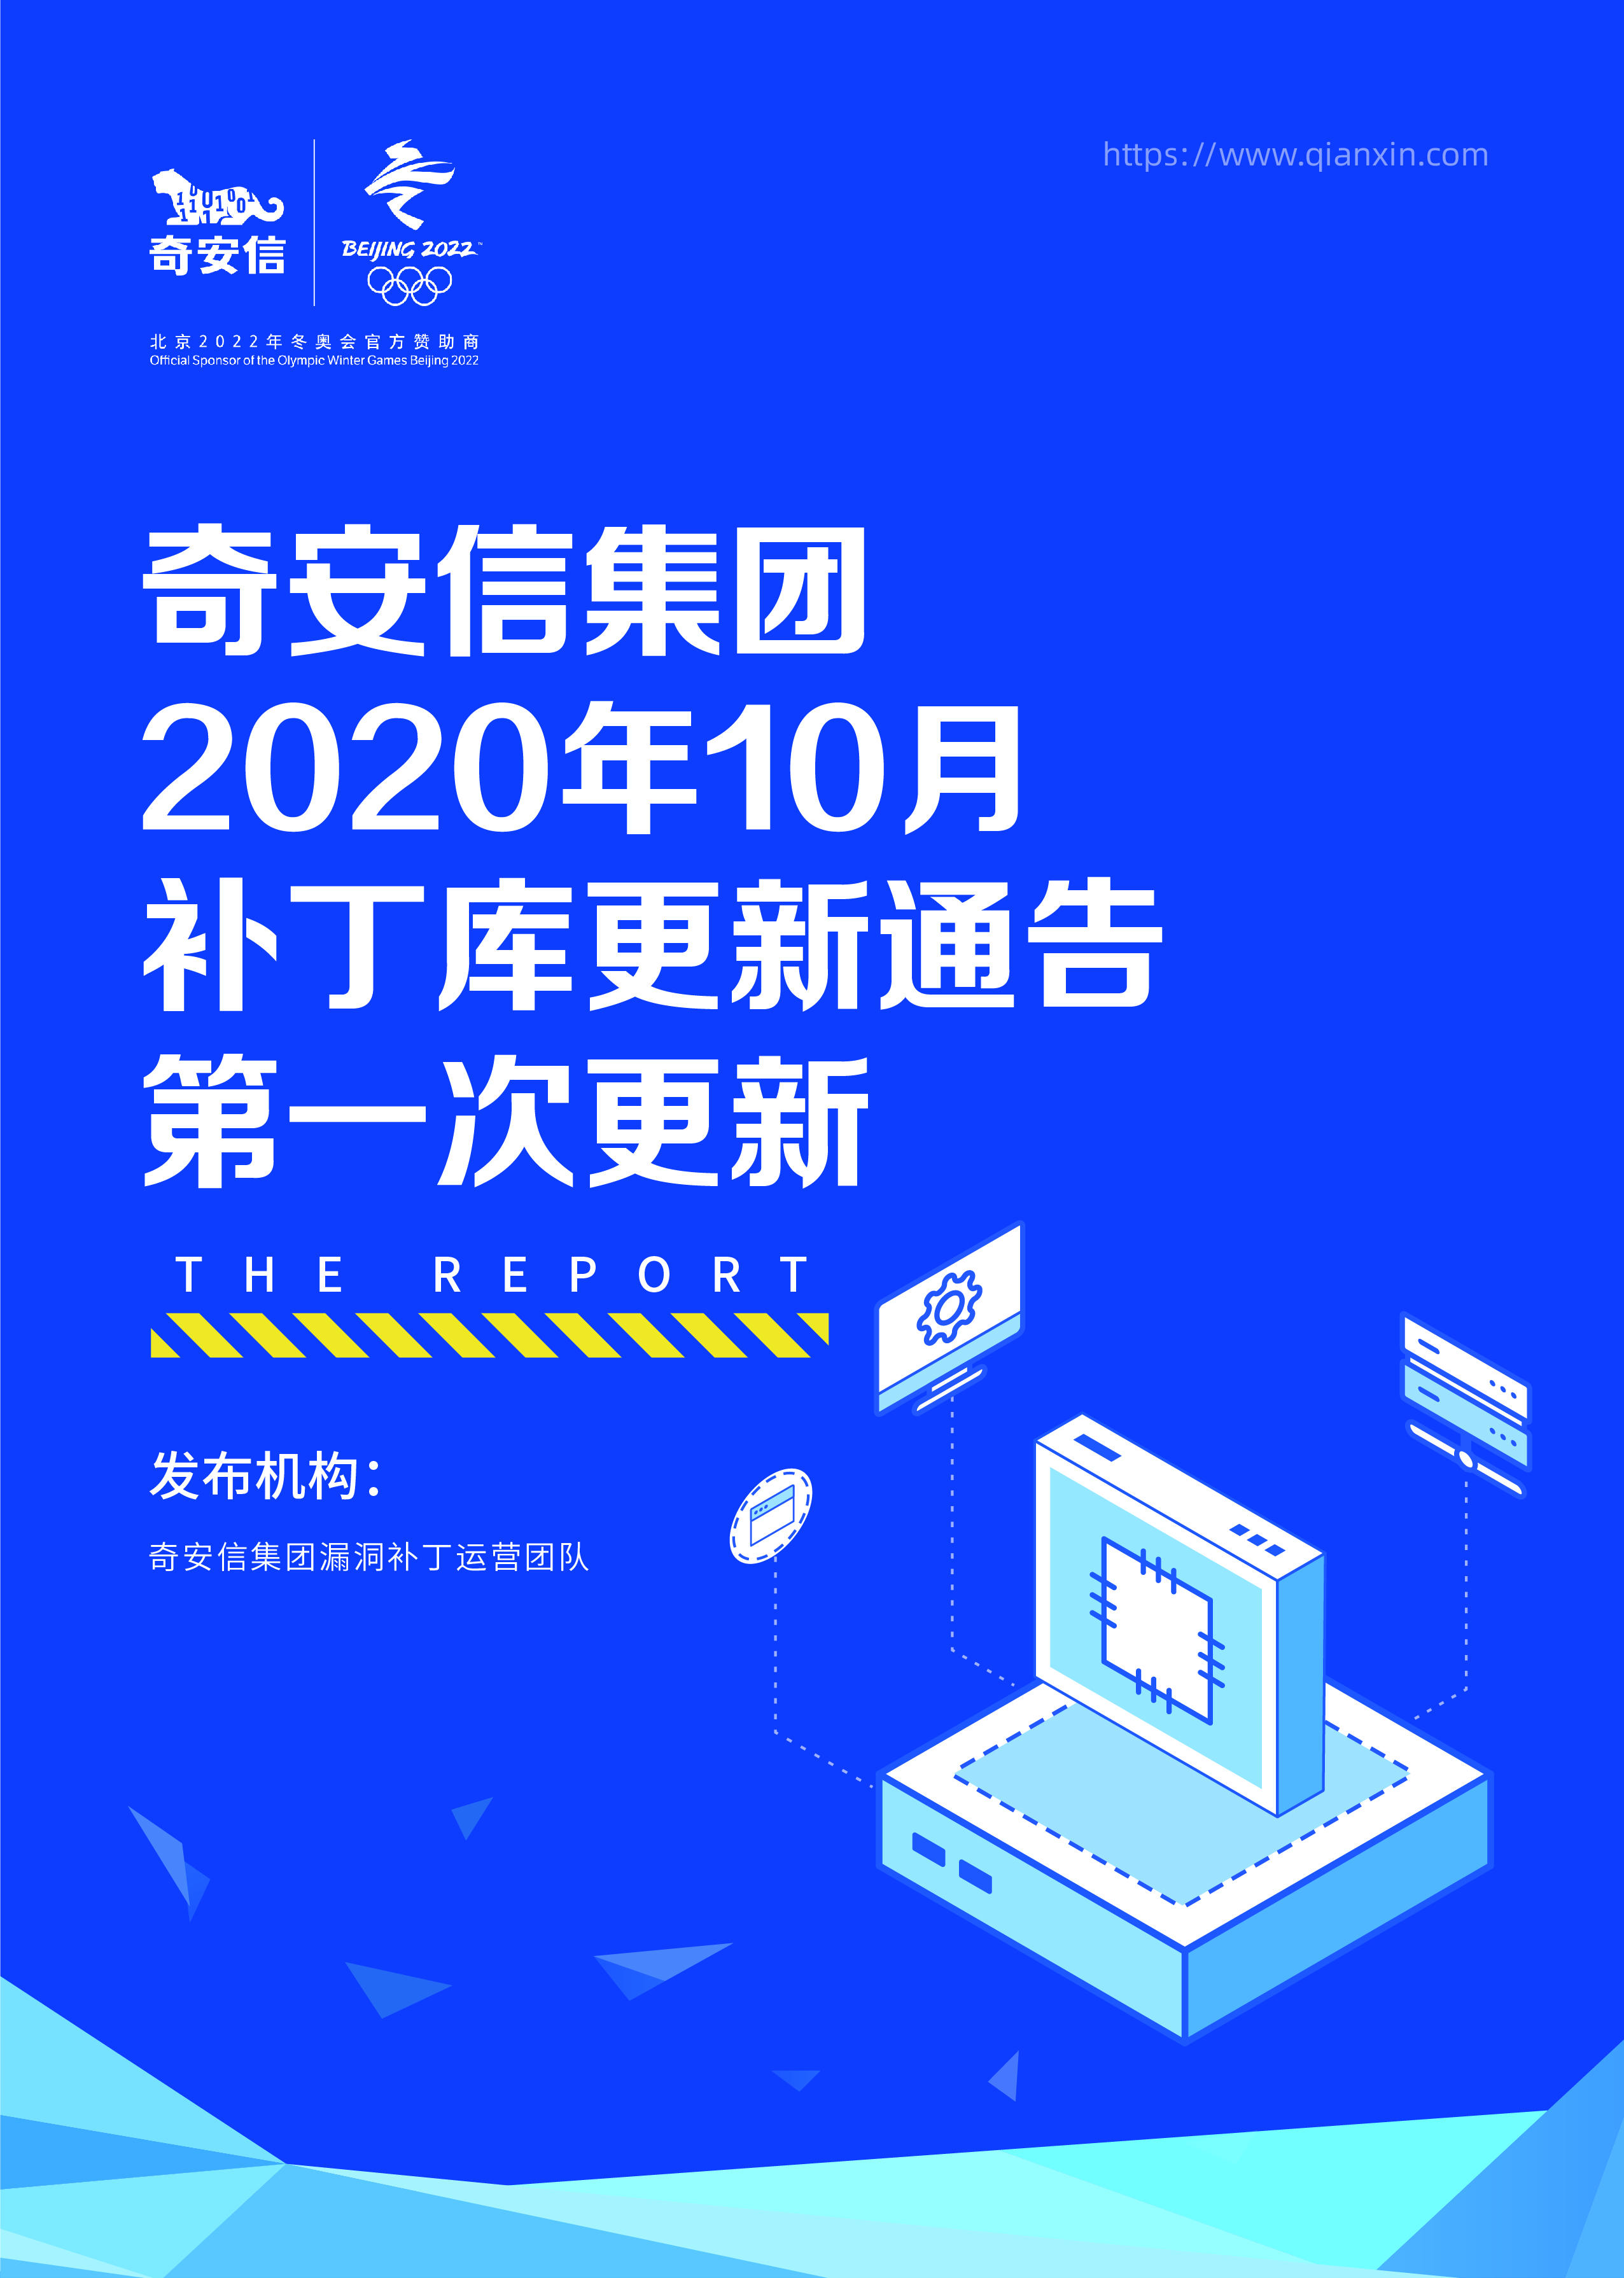 奇安信集团2020年10月补丁库更新通告-第一次更新